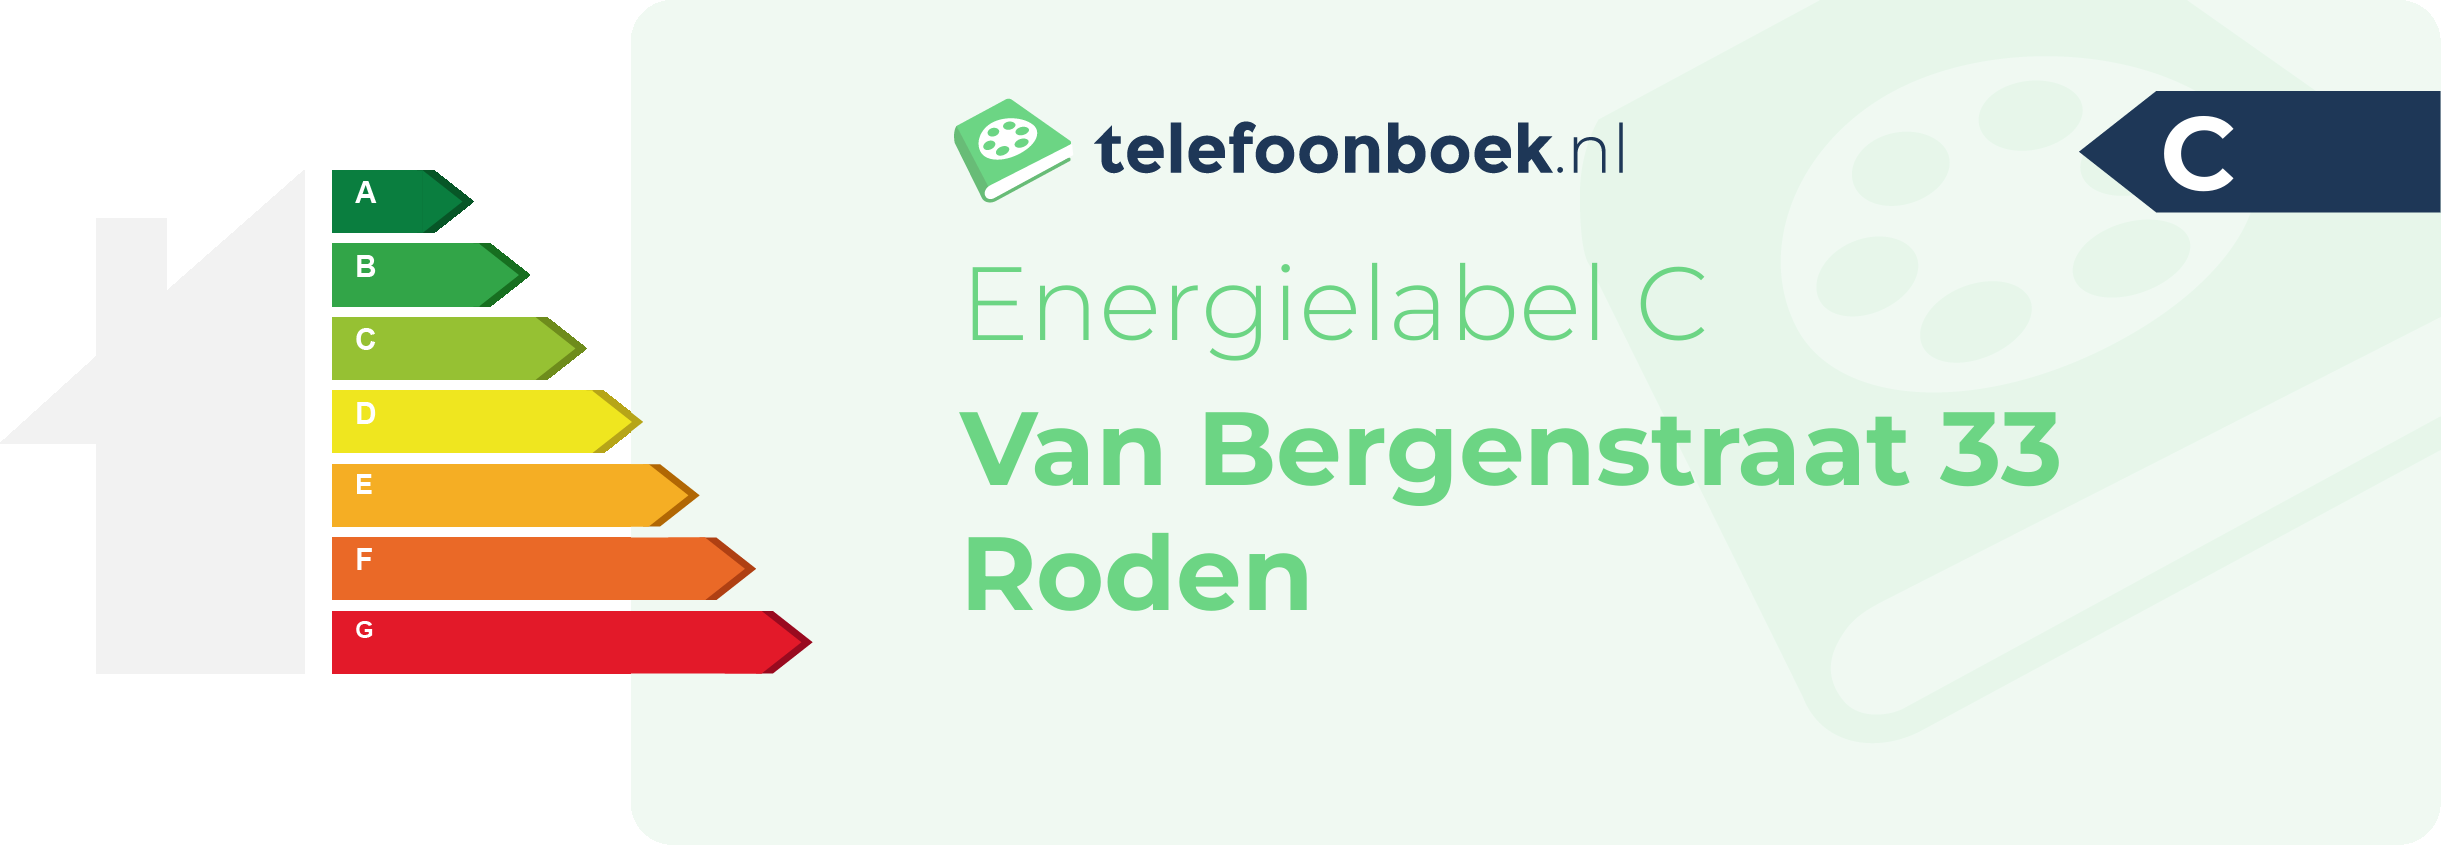 Energielabel Van Bergenstraat 33 Roden